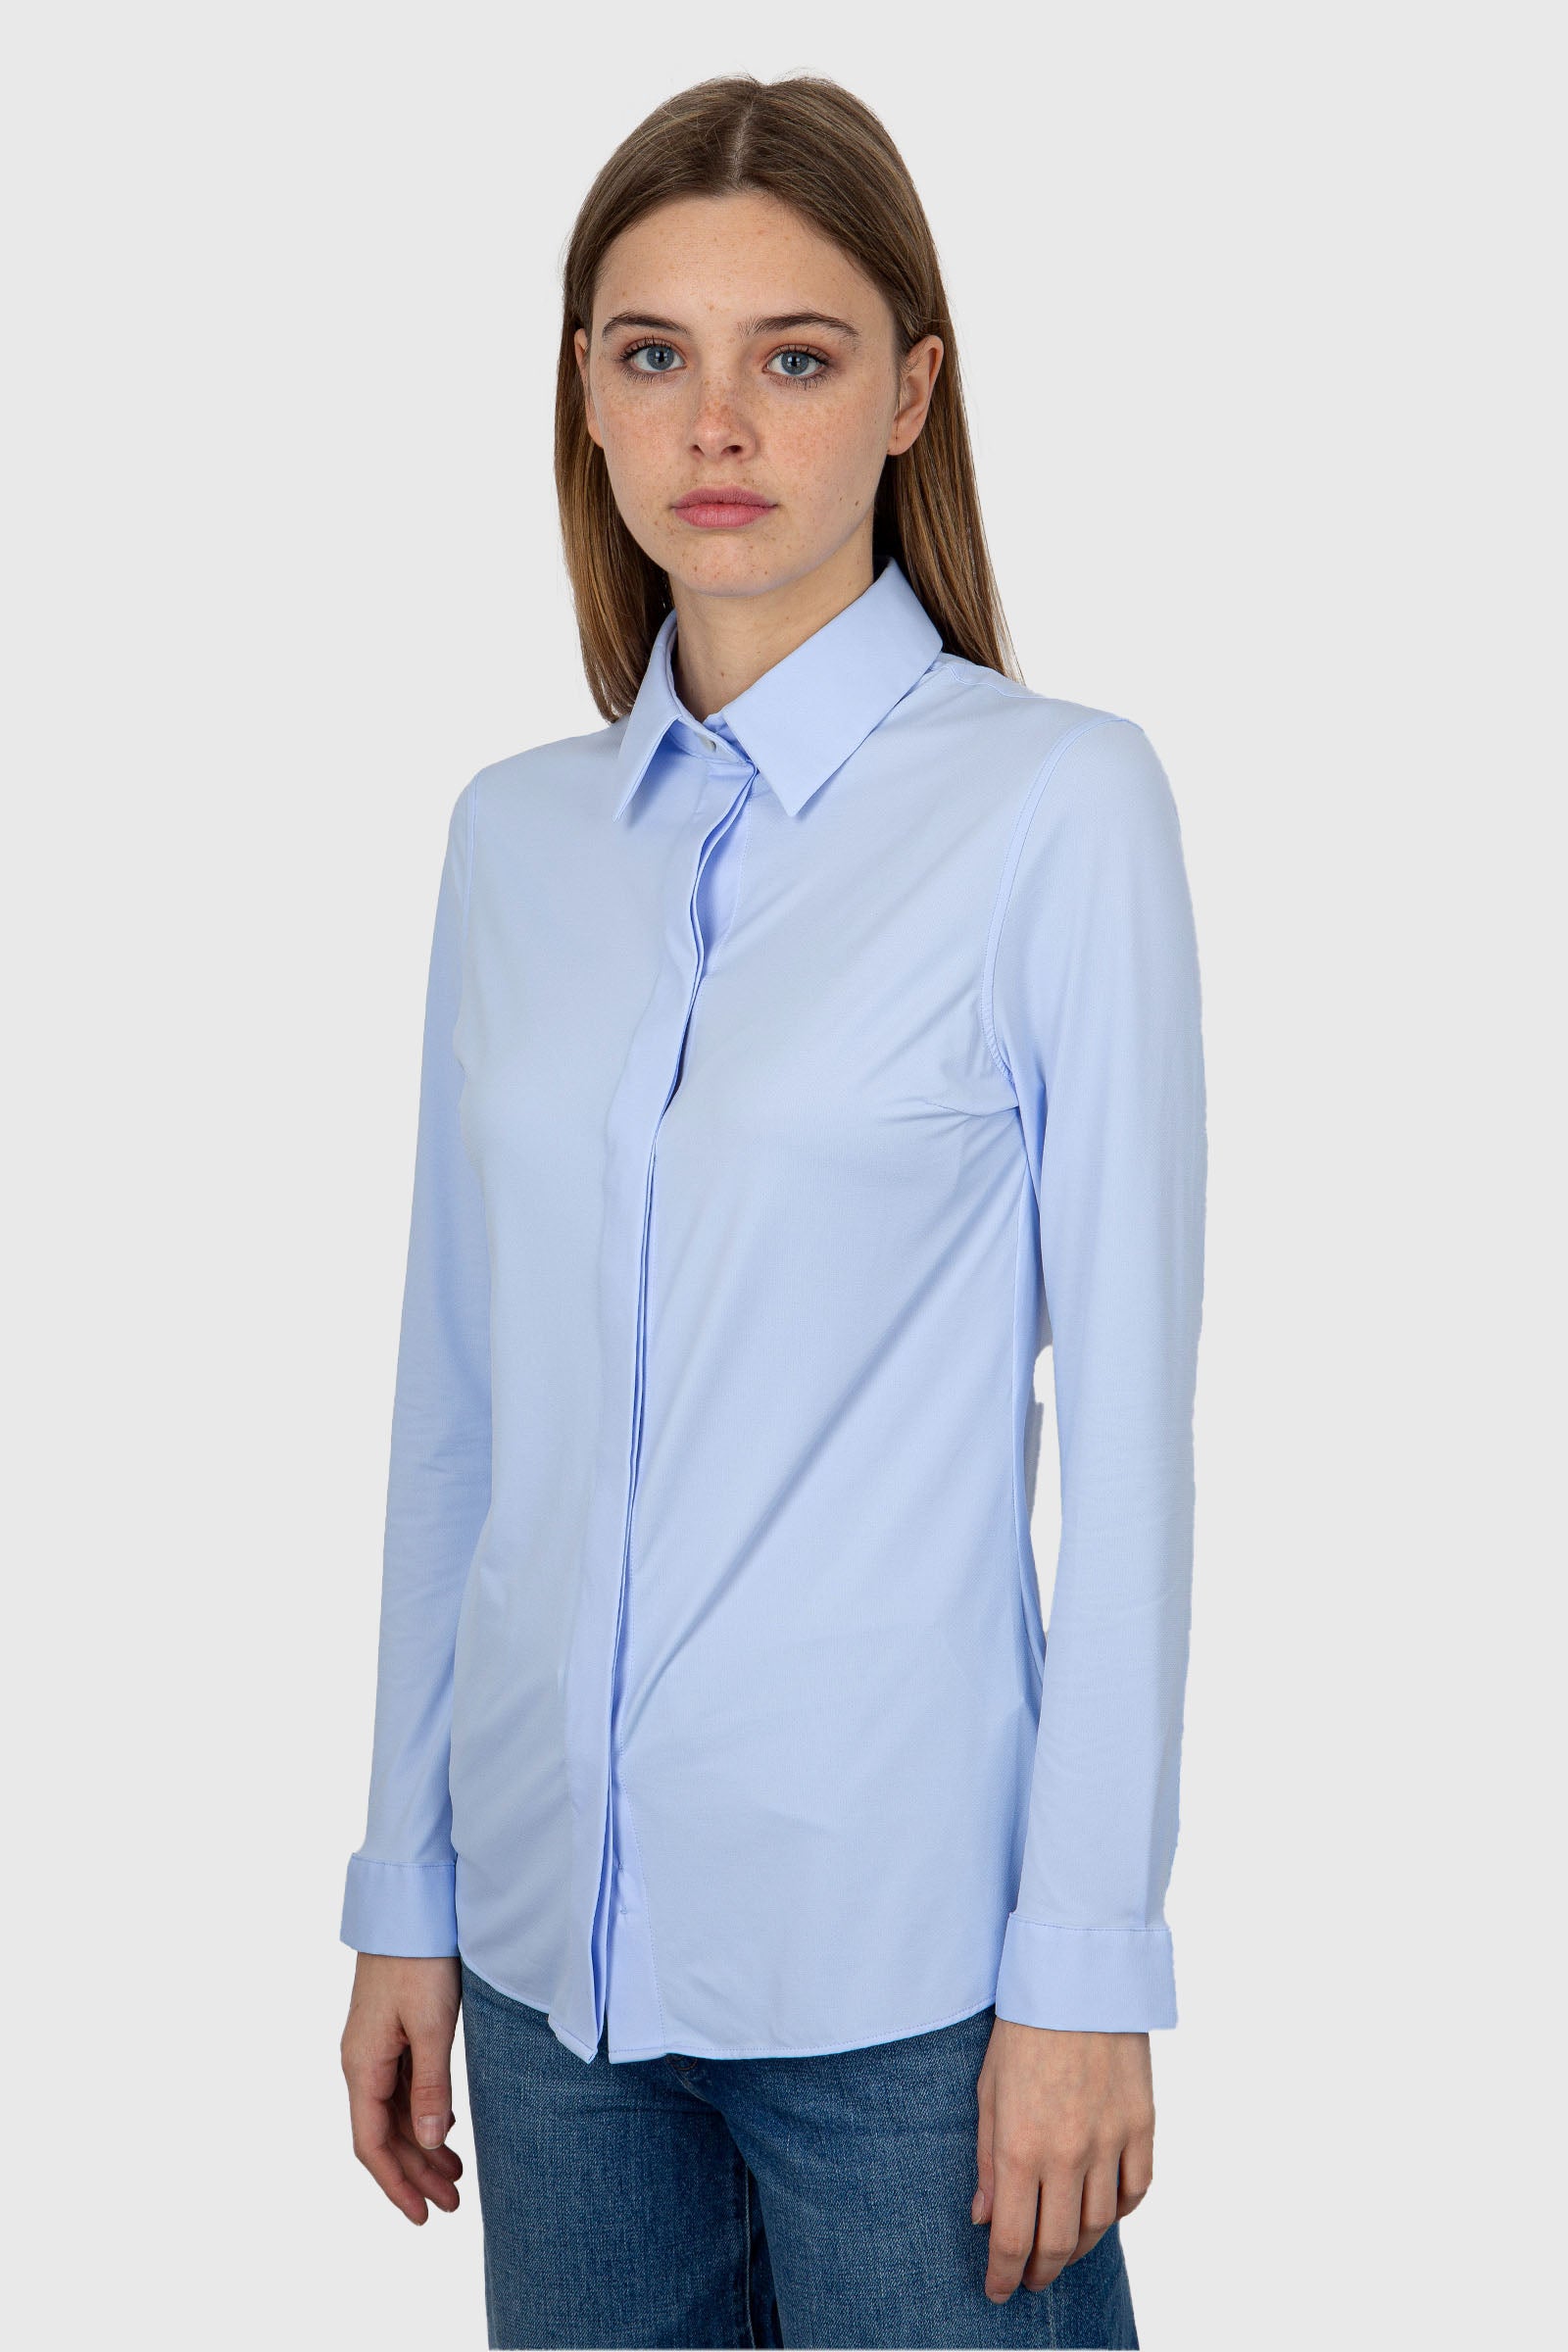 RRD Camicia Oxford Plain Wom Shirt  Celeste - 3